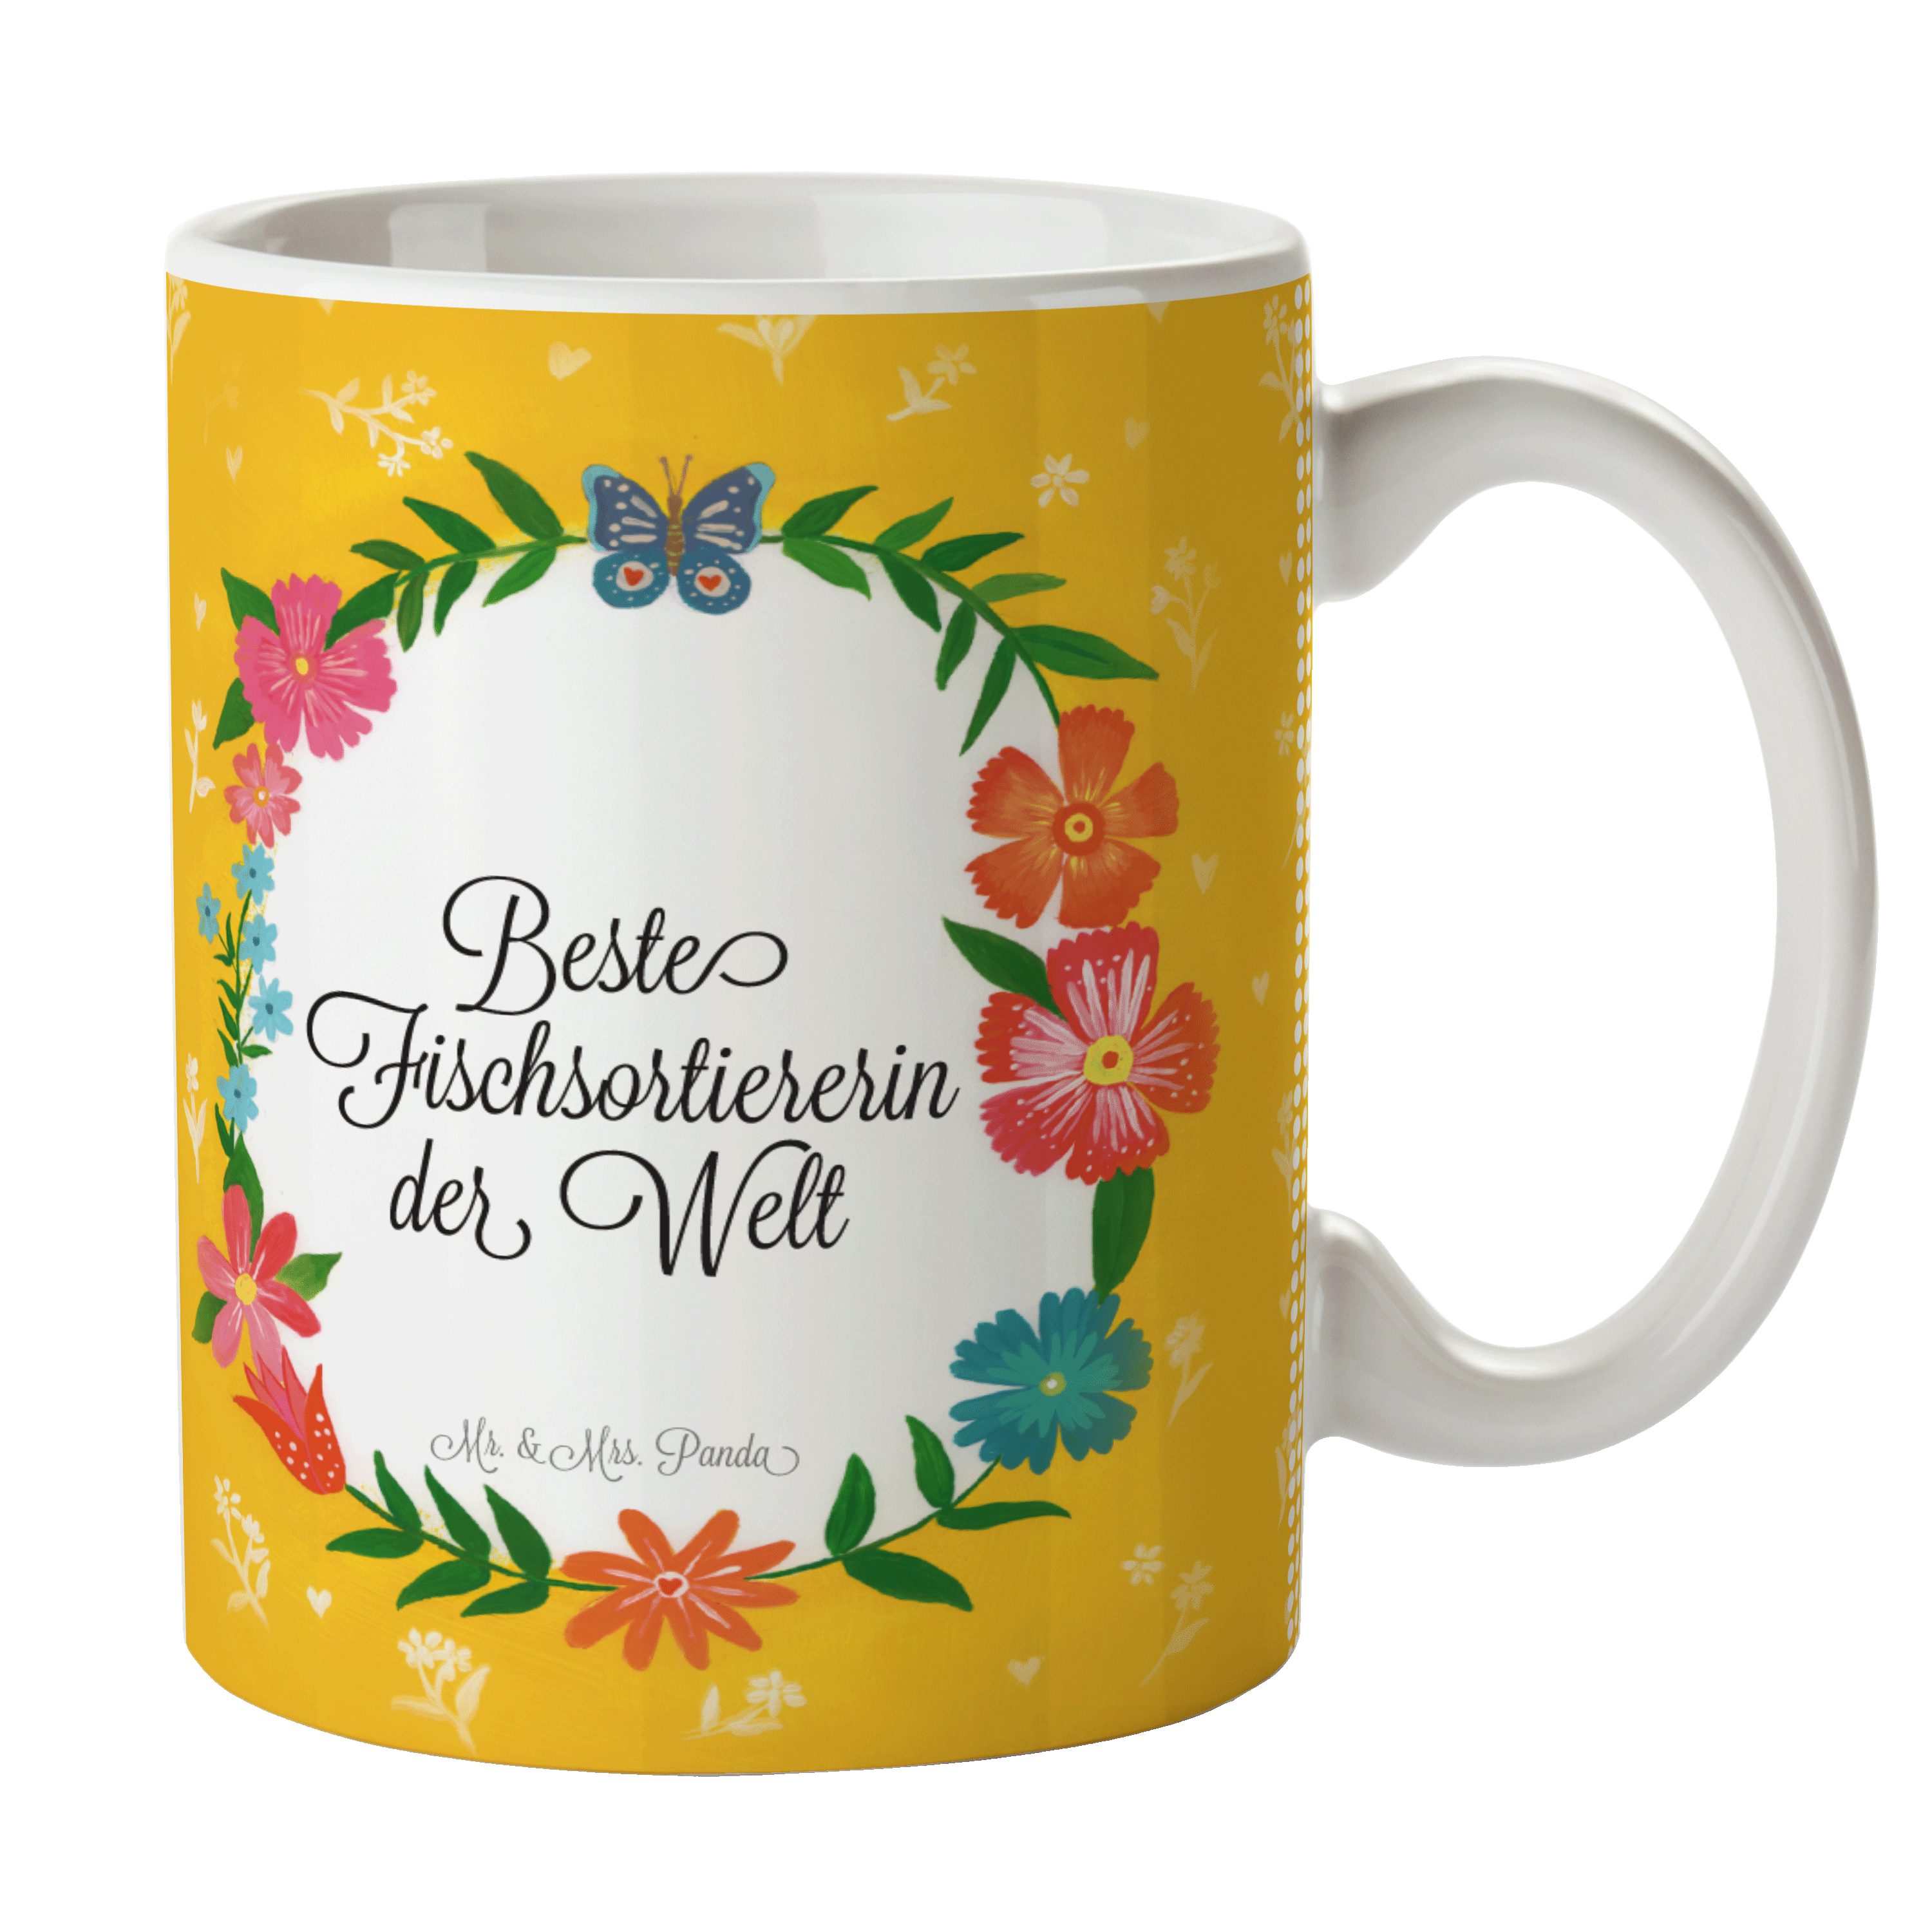 & Geschenk, Keramik - Mr. Rente, Mrs. Kaffeetasse, Fischsortiererin Abschi, Panda Tasse Kaffeebecher,